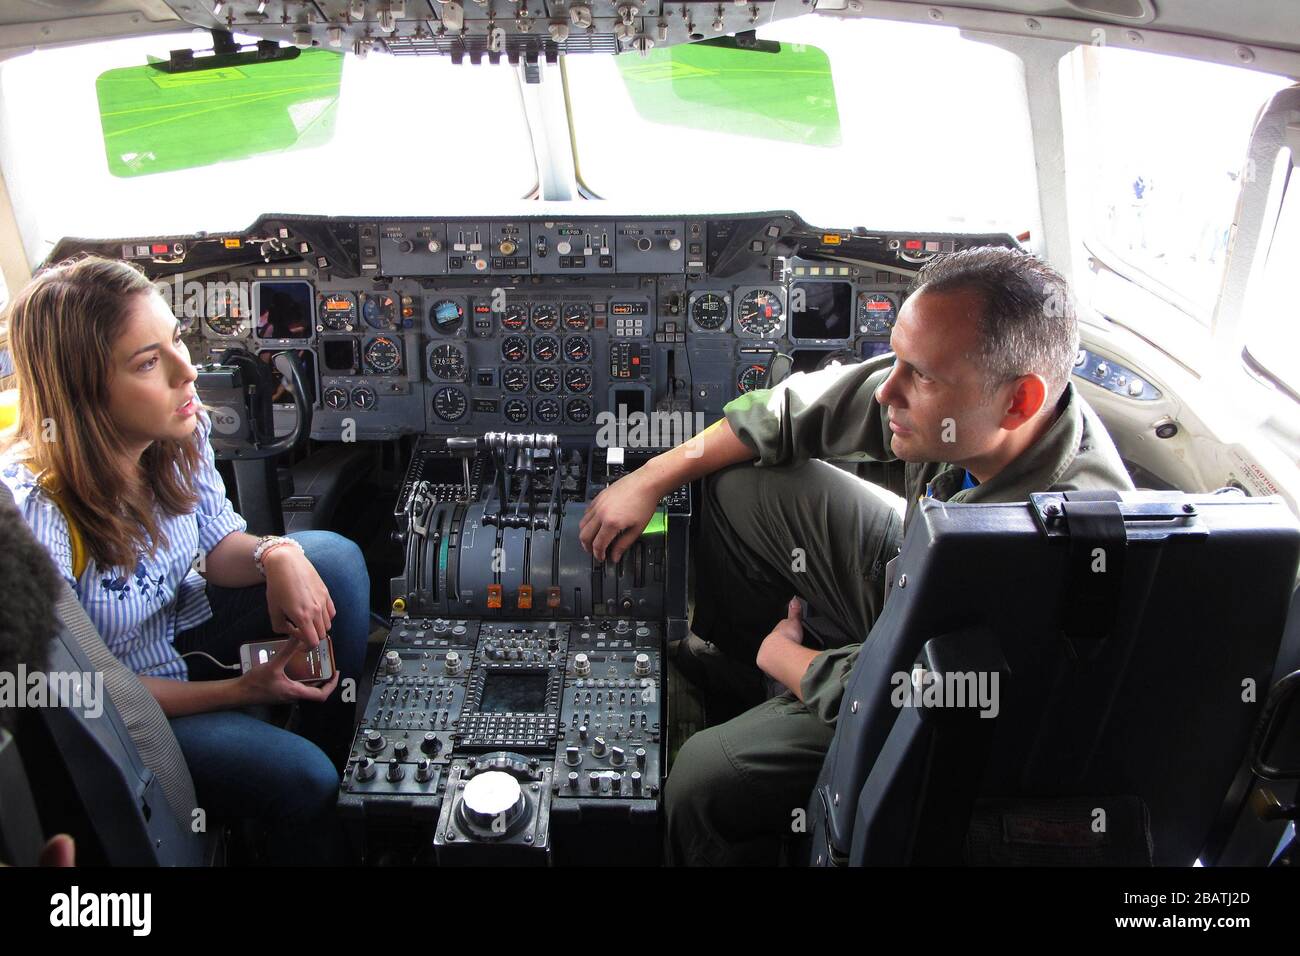 'Inglés: Juanita Gomes, reportero de la televisión Noticias Caracol en Bogotá, entrevista a la Maestra Senior SGT de la Fuerza Aérea de los Estados Unidos. Russell Downie, con el escuadrón de reabastecimiento aéreo 79º de la base de la Fuerza Aérea de Travis, California, en la cabina de un KC-10 durante la Feria Aeronáutica Internacional de la Fuerza Aérea Colombiana – Colombia en Rionegro, 14 de julio de 2017. La Fuerza Aérea de los Estados Unidos participa en el espectáculo aéreo de cuatro días con dos guardias nacionales aéreas de Carolina del Sur F-16 como pantallas estáticas, además de pantallas estáticas de un KC-135, KC-10, junto con una demostración aérea de Viper EA del comando de combate aéreo Foto de stock